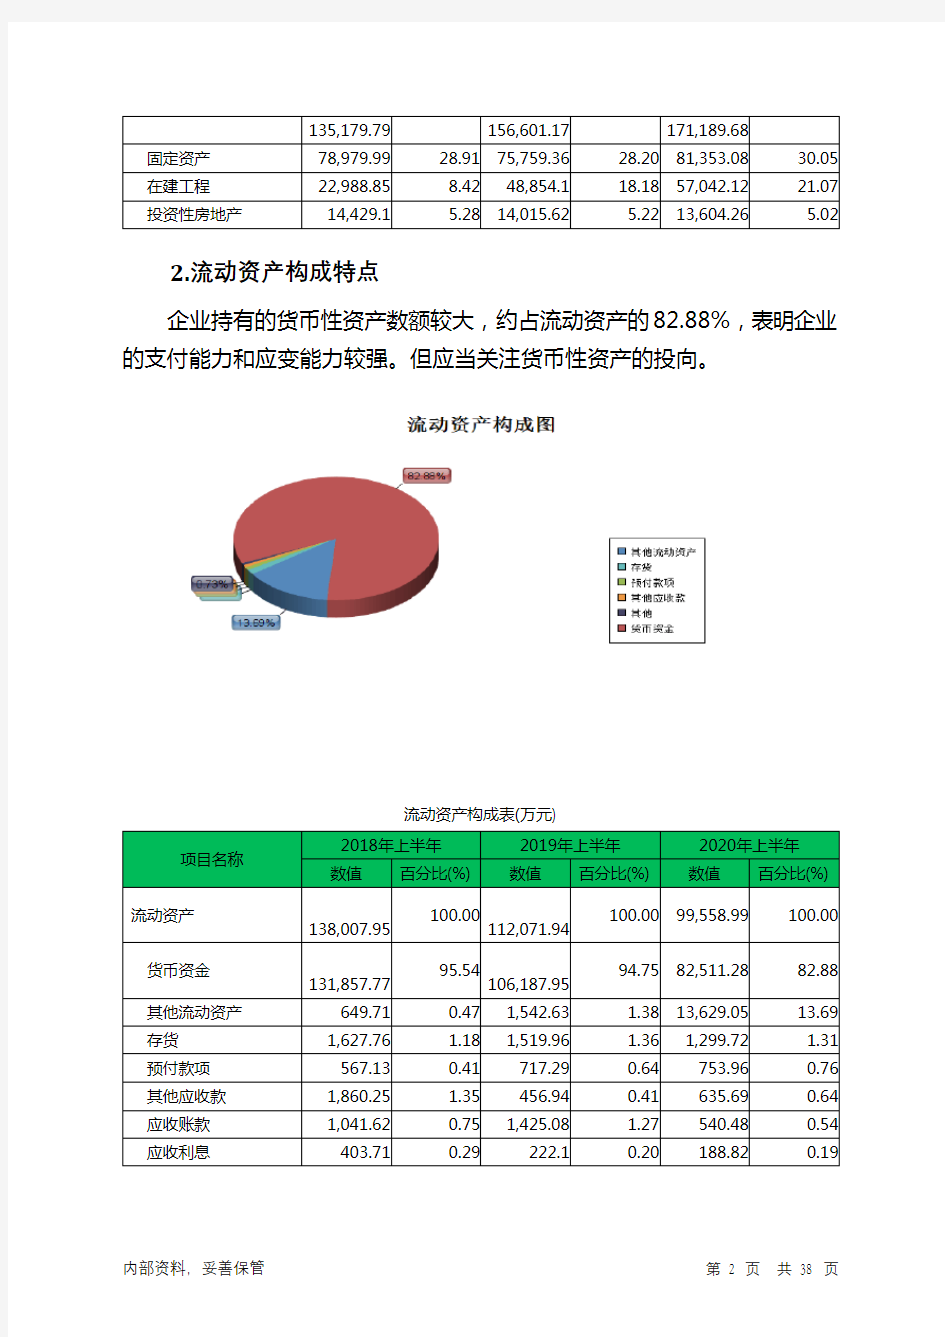 丽江旅游2020年上半年财务分析详细报告